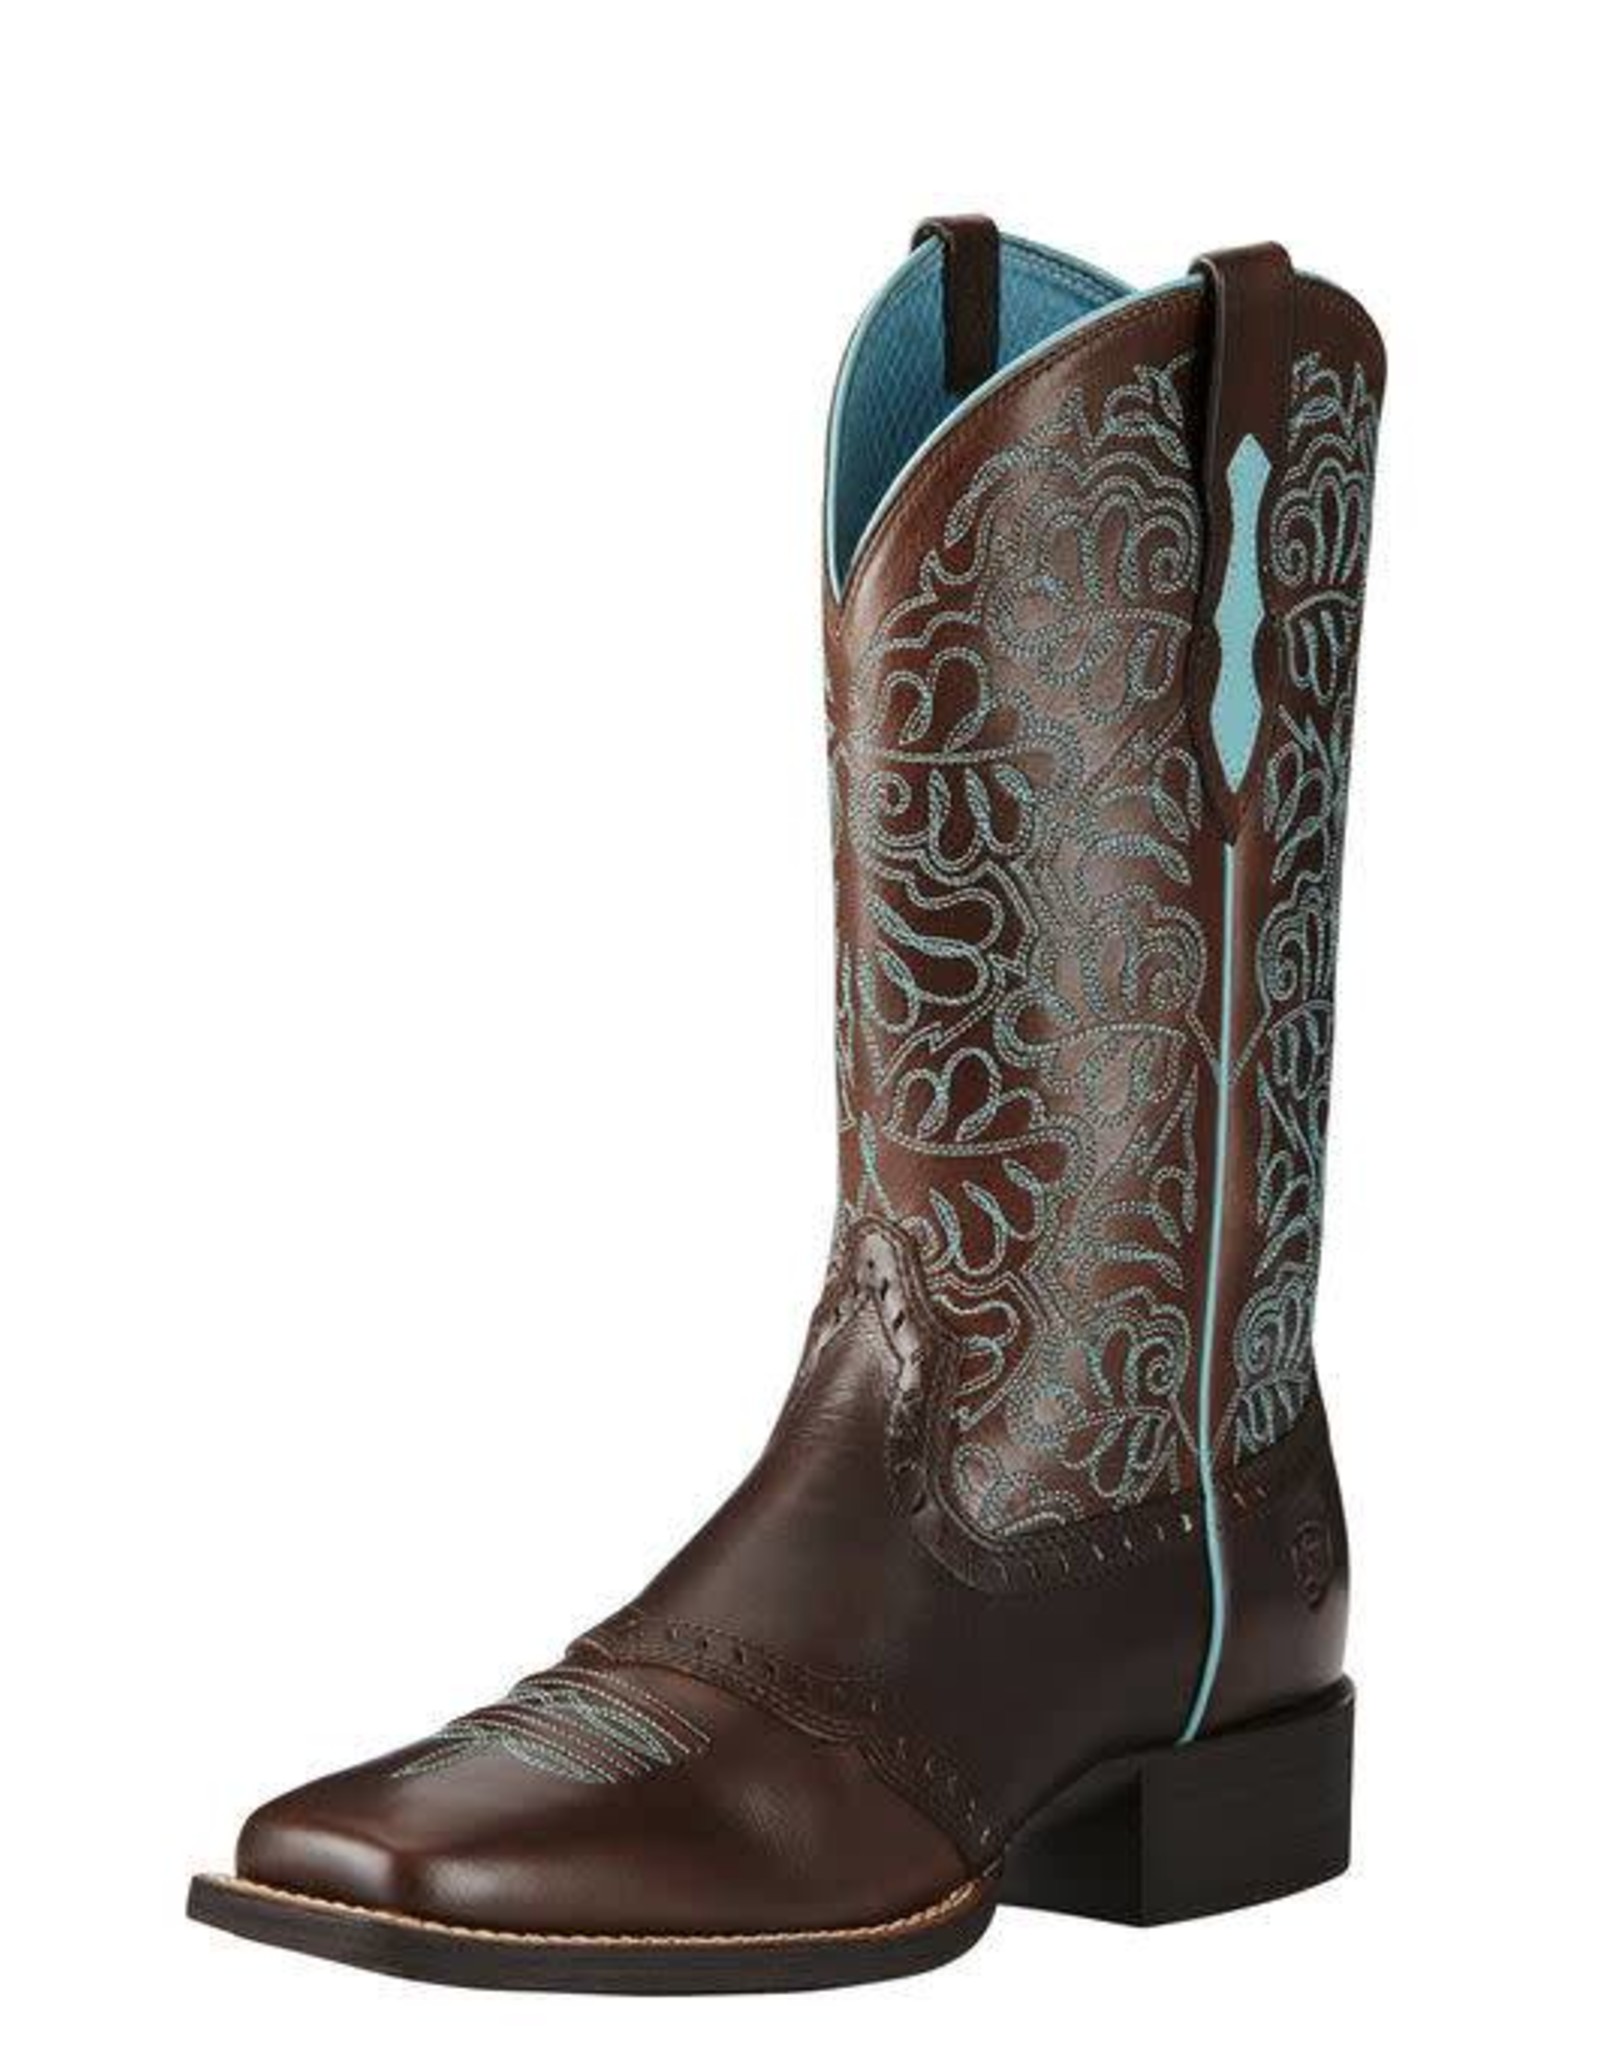 Ariat Ariat Round Up Remuda Dark Brown/Blue Western Boots Size 10 B Medium Width